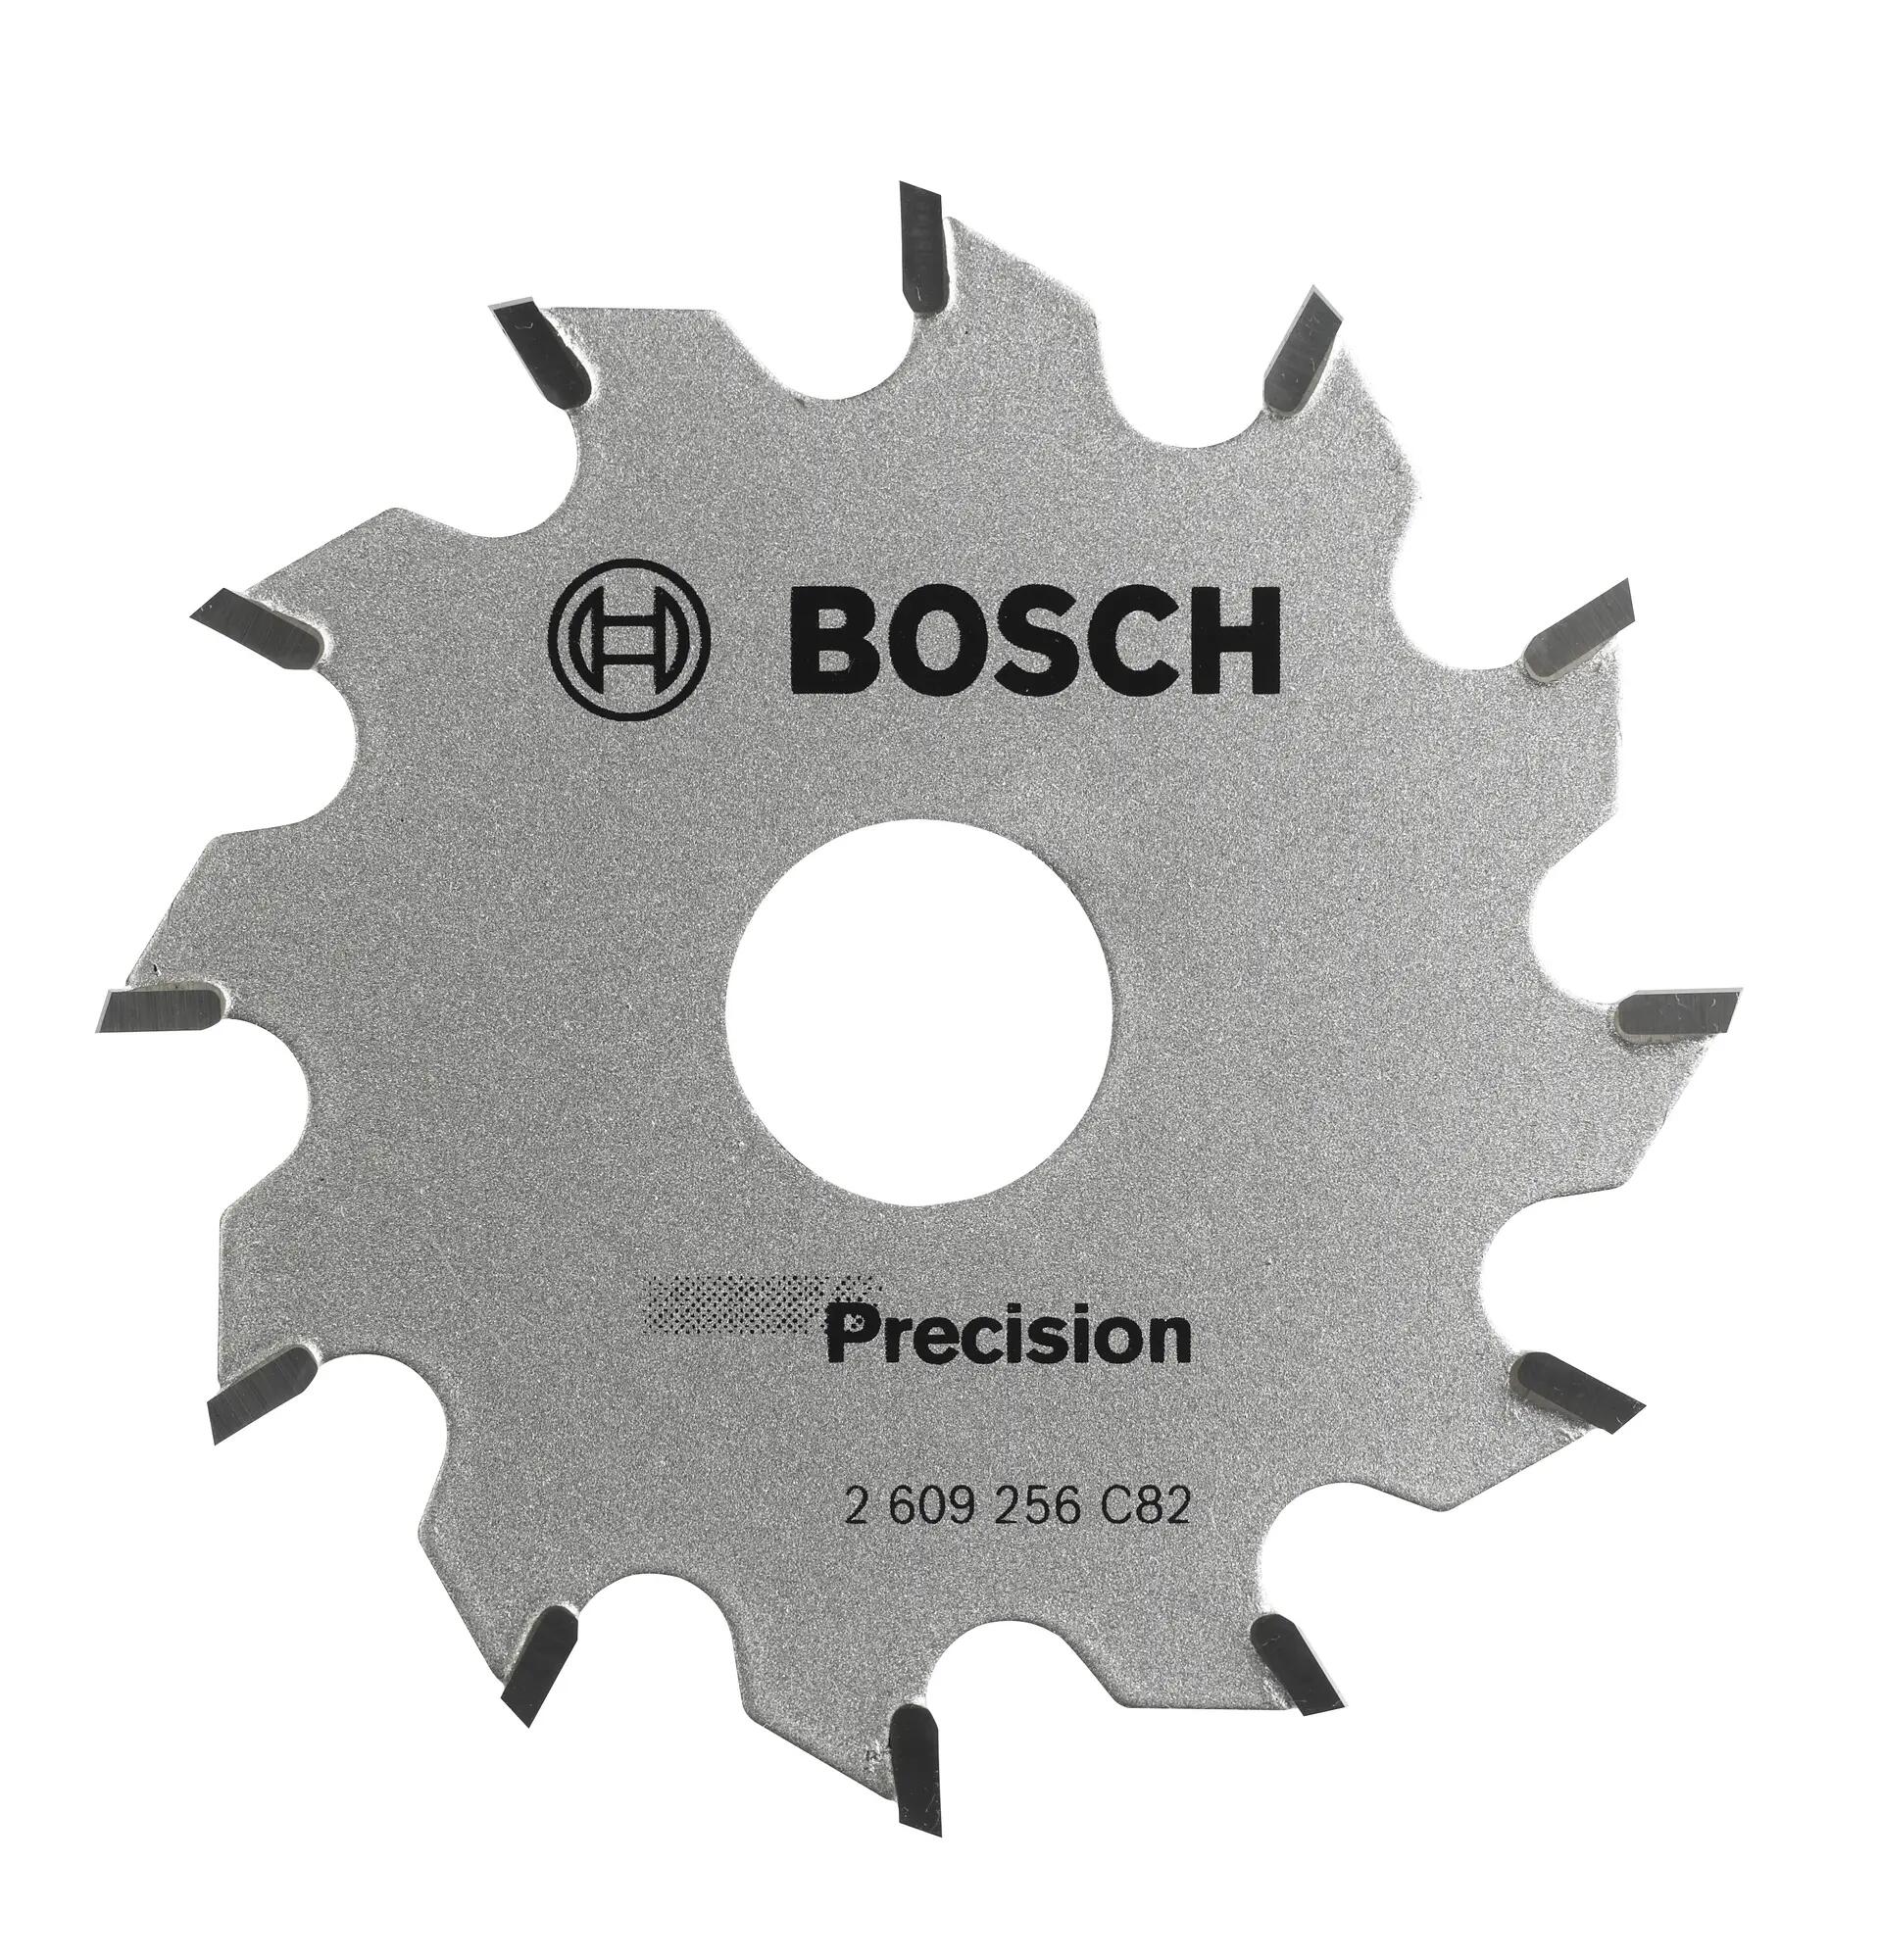 Bosch Disco de sierra circular bosch pks 1600 para madera, 65 x 15 mm y 12 dientes